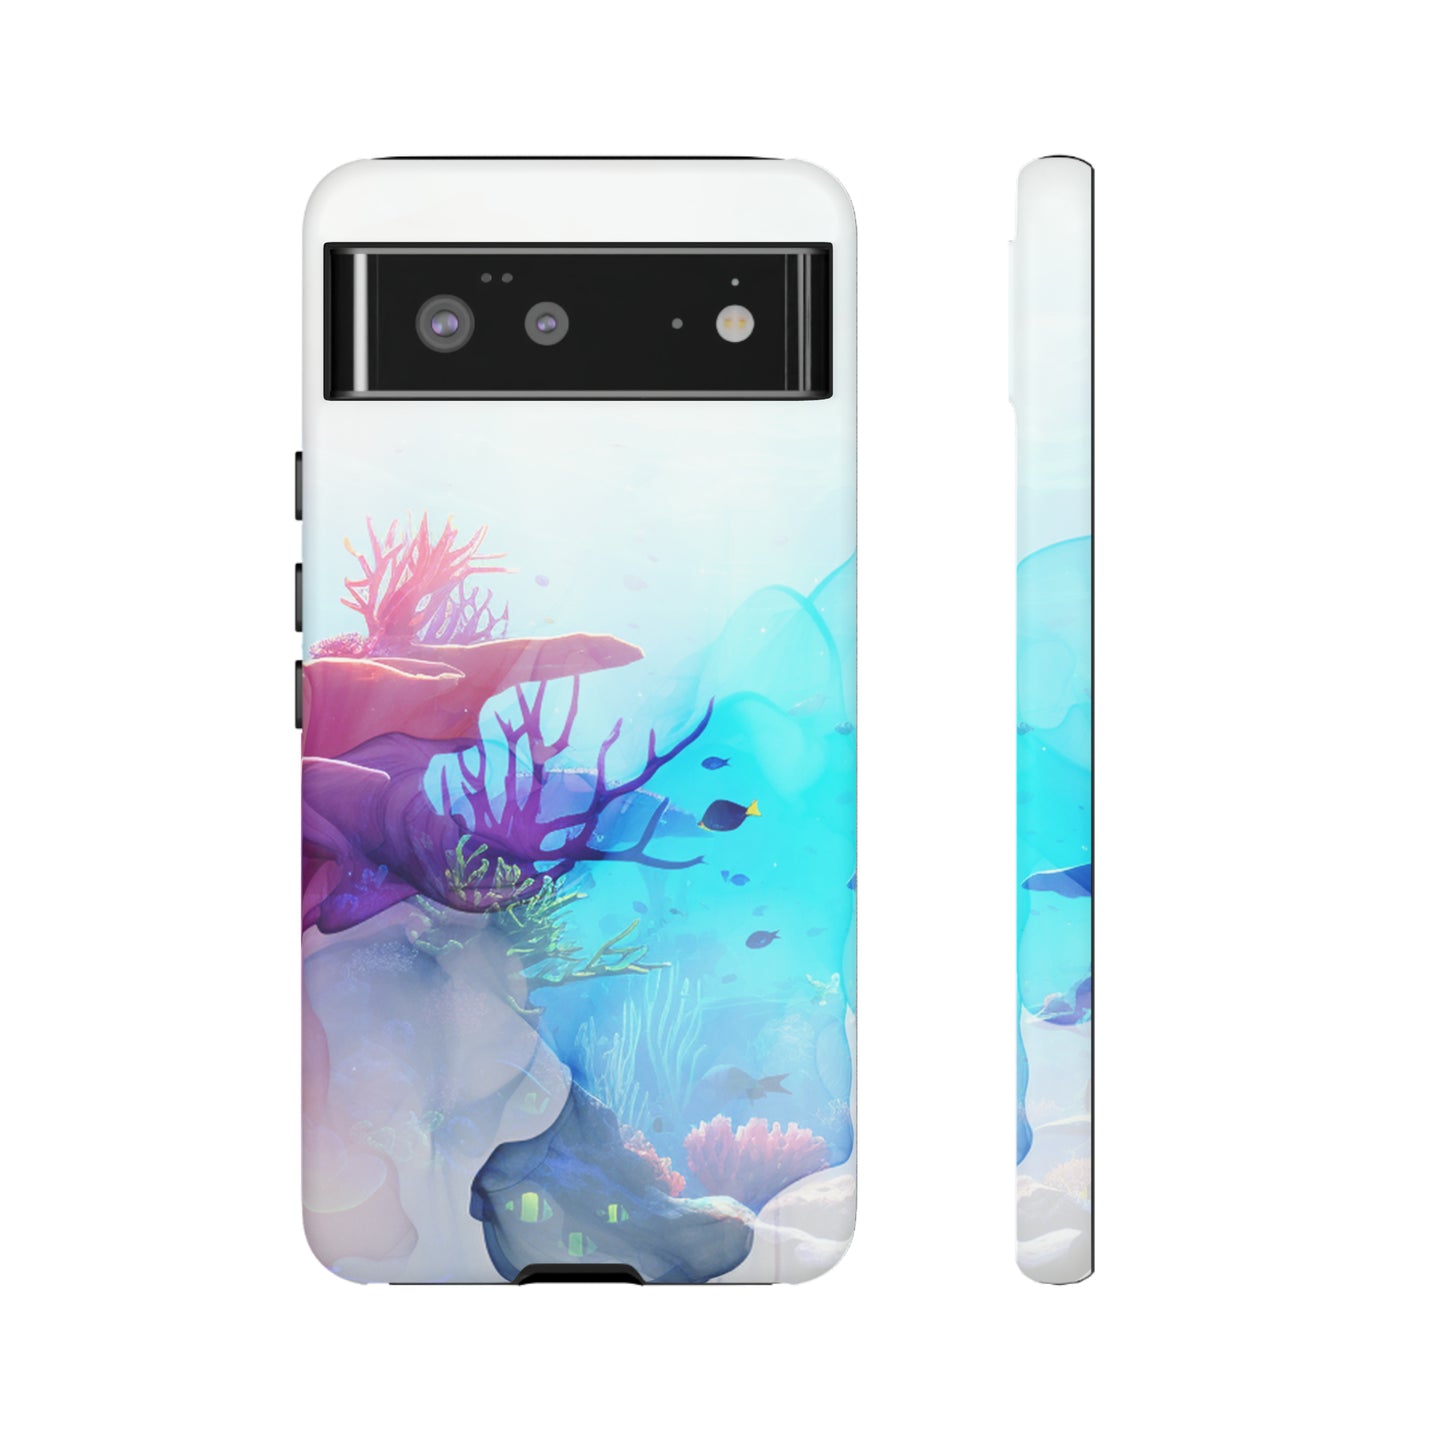 Neduz Designs Coral Reef Tough Case - Vivid Dreams Collection for Smartphones